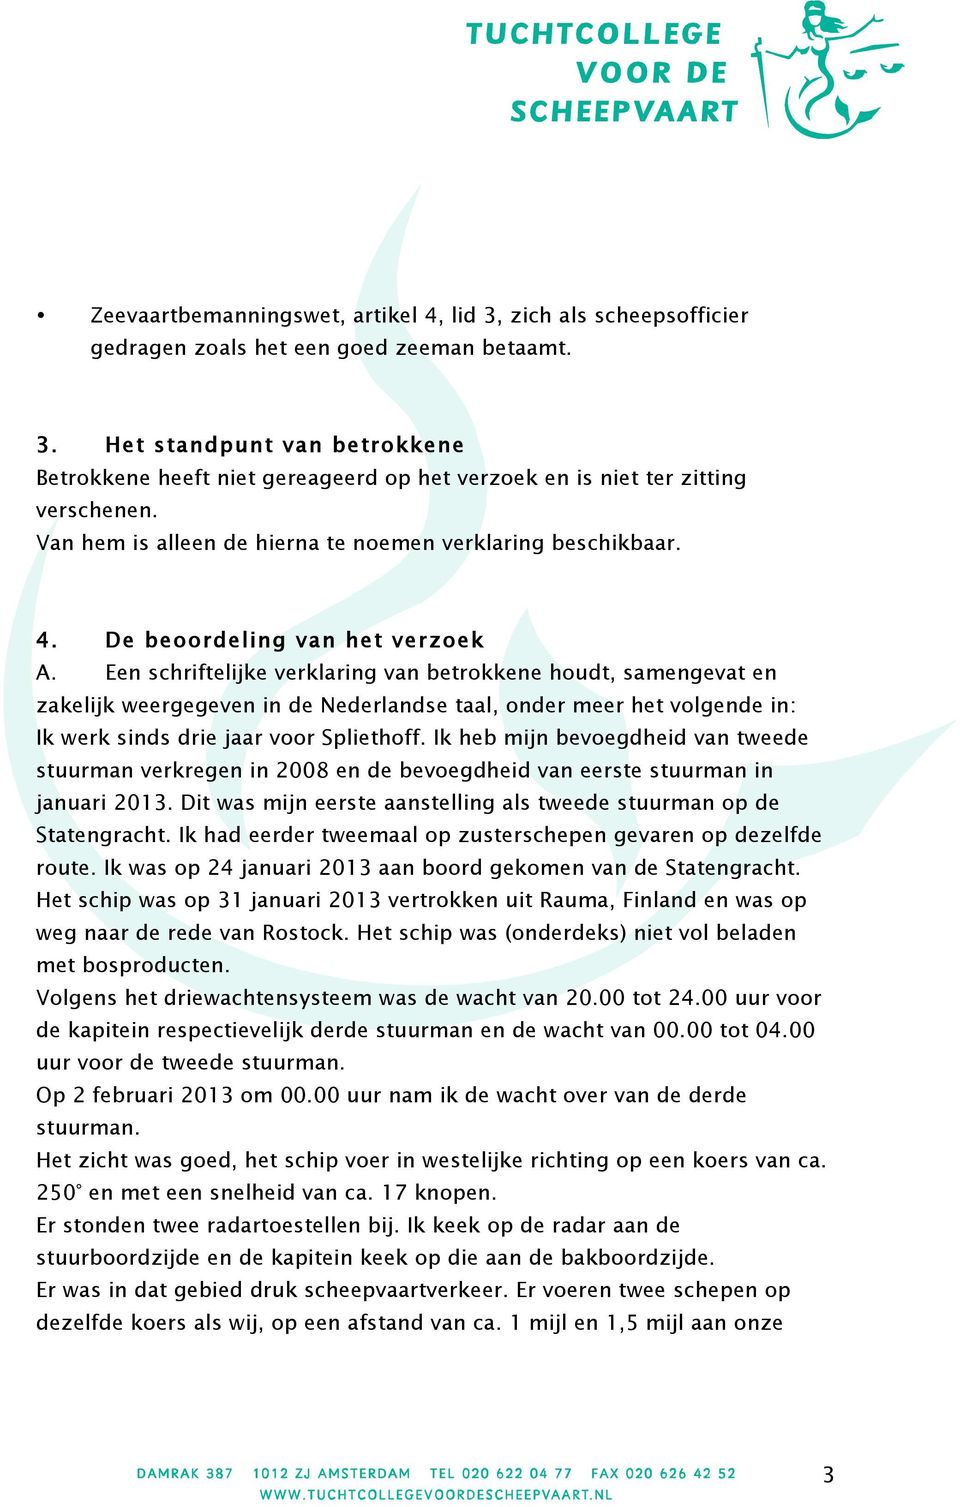 Een schriftelijke verklaring van betrokkene houdt, samengevat en zakelijk weergegeven in de Nederlandse taal, onder meer het volgende in: Ik werk sinds drie jaar voor Spliethoff.